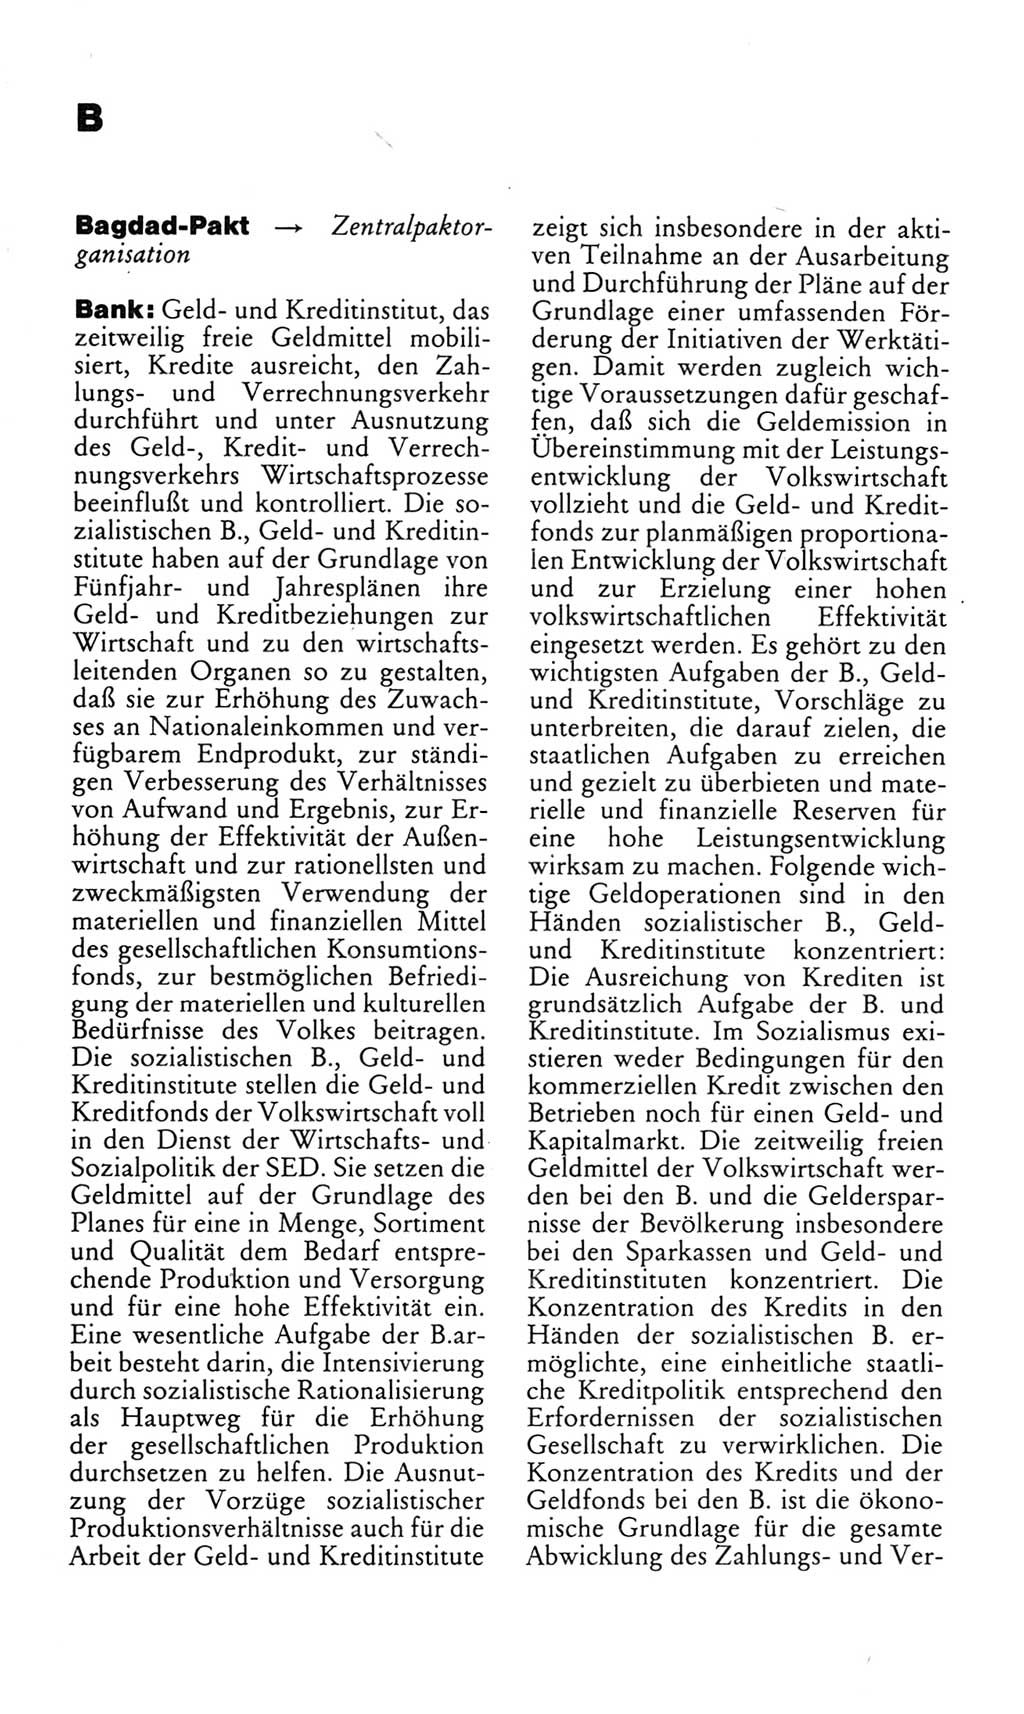 Kleines politisches Wörterbuch [Deutsche Demokratische Republik (DDR)] 1985, Seite 114 (Kl. pol. Wb. DDR 1985, S. 114)